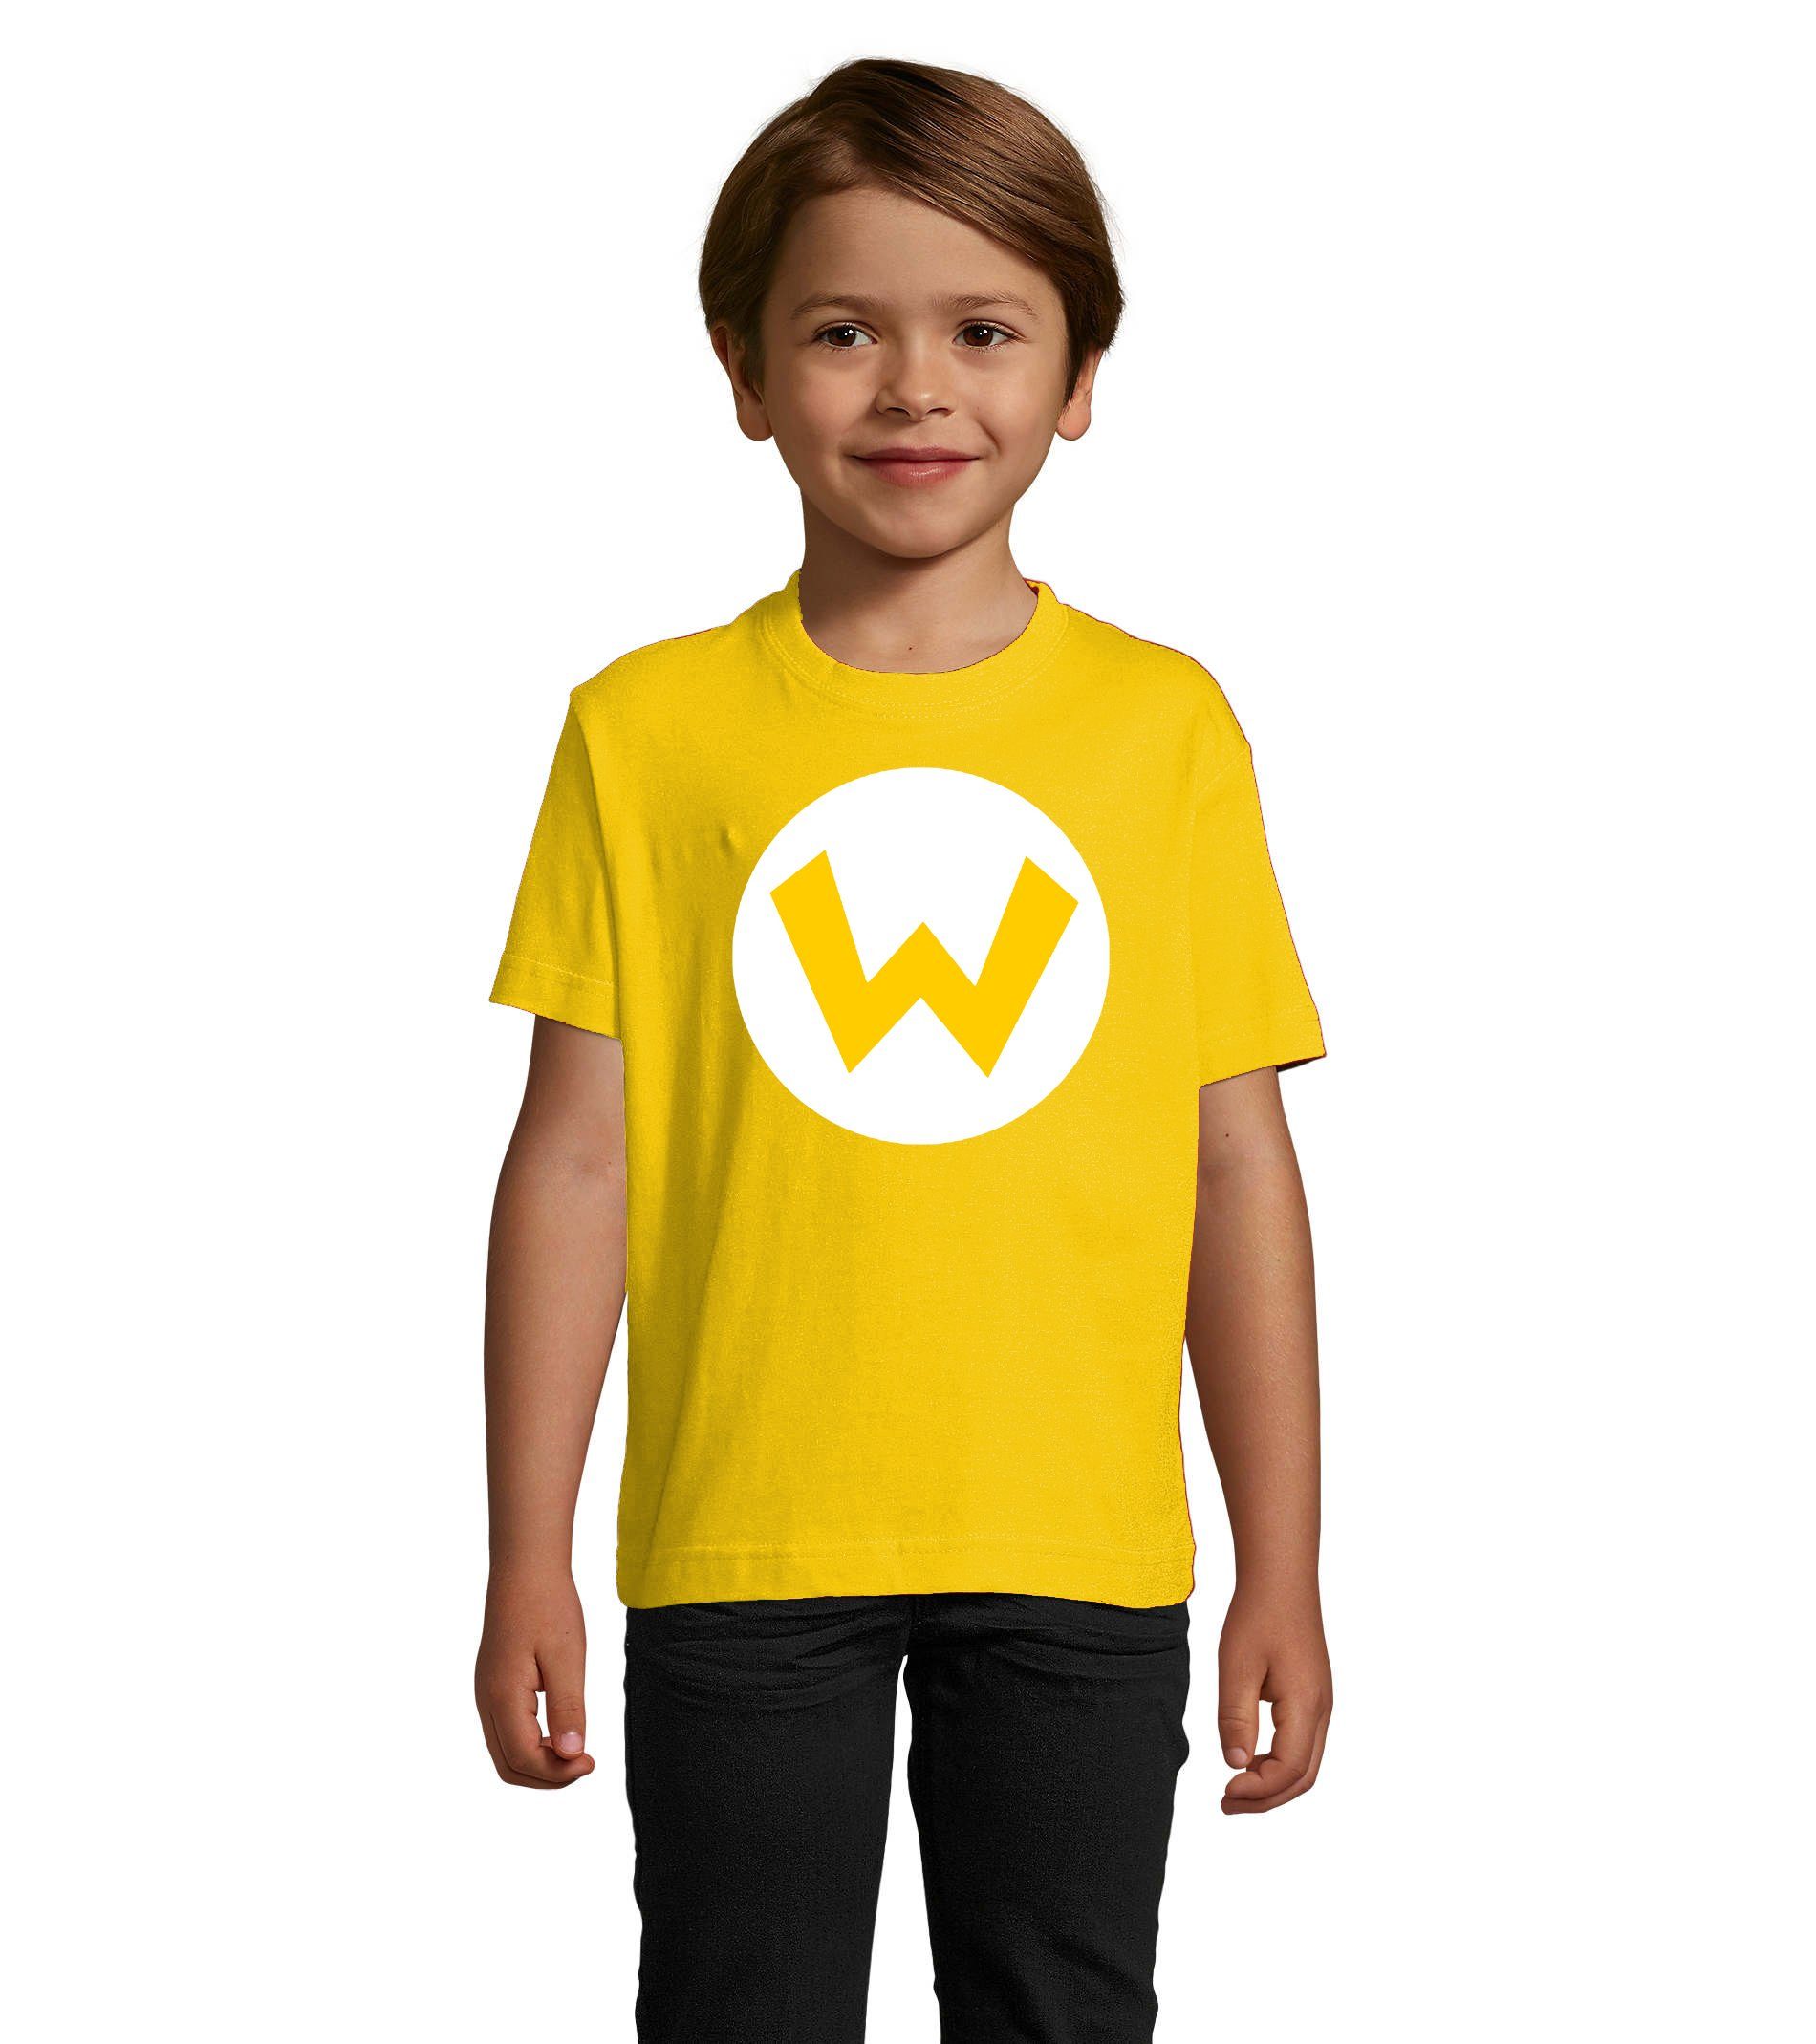 Blondie & Brownie T-Shirt Kinder Jungen & Mädchen Mario Luigi Logo Nintendo Yoshi Luigi in Rot und Grün Wario (Gelb)